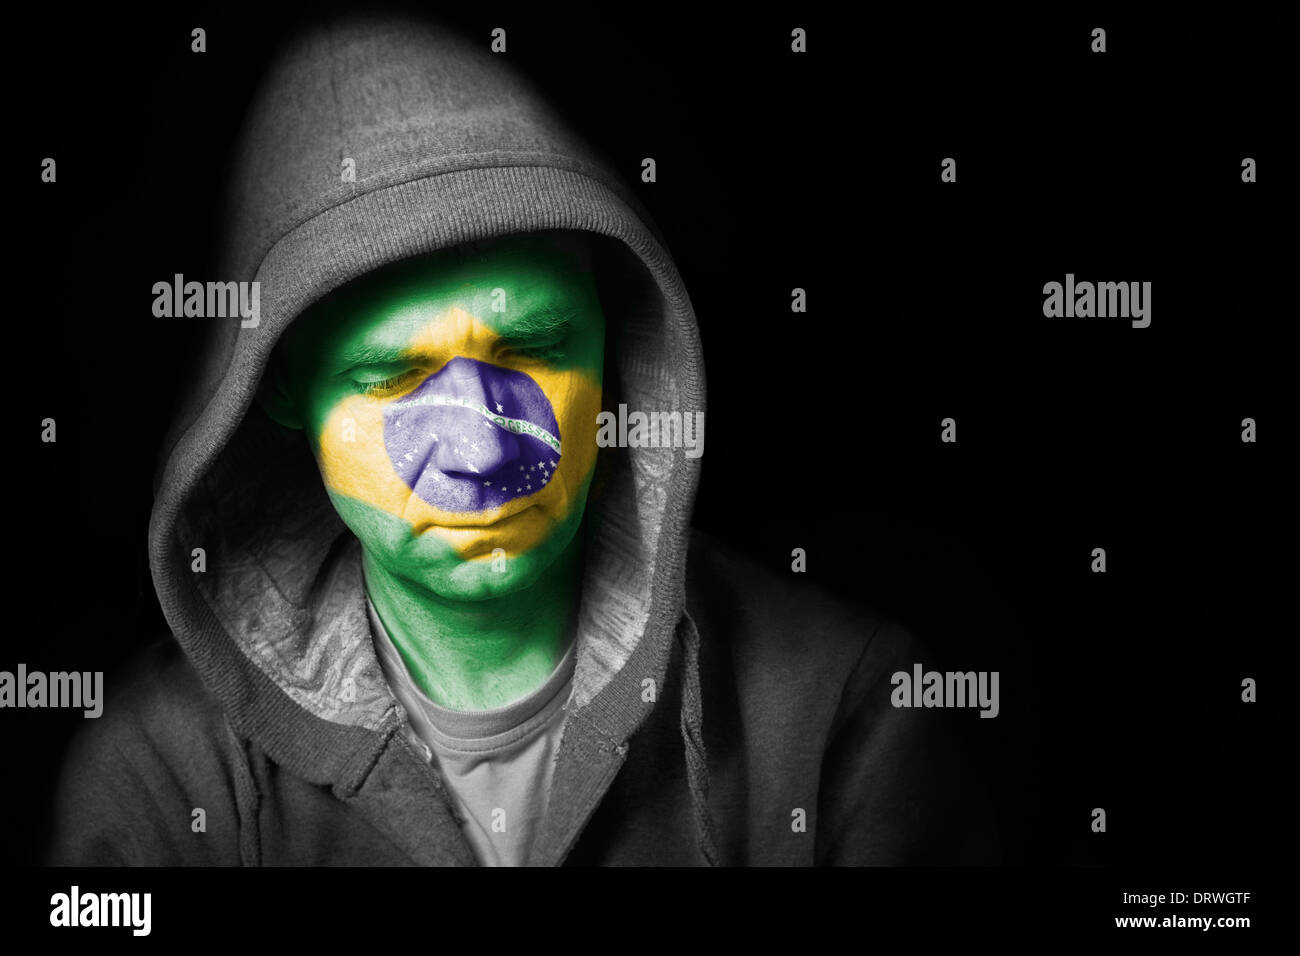 Une expression triste sur le visage d'un supporter de football avec leur visage peint avec le drapeau brésilien. Banque D'Images